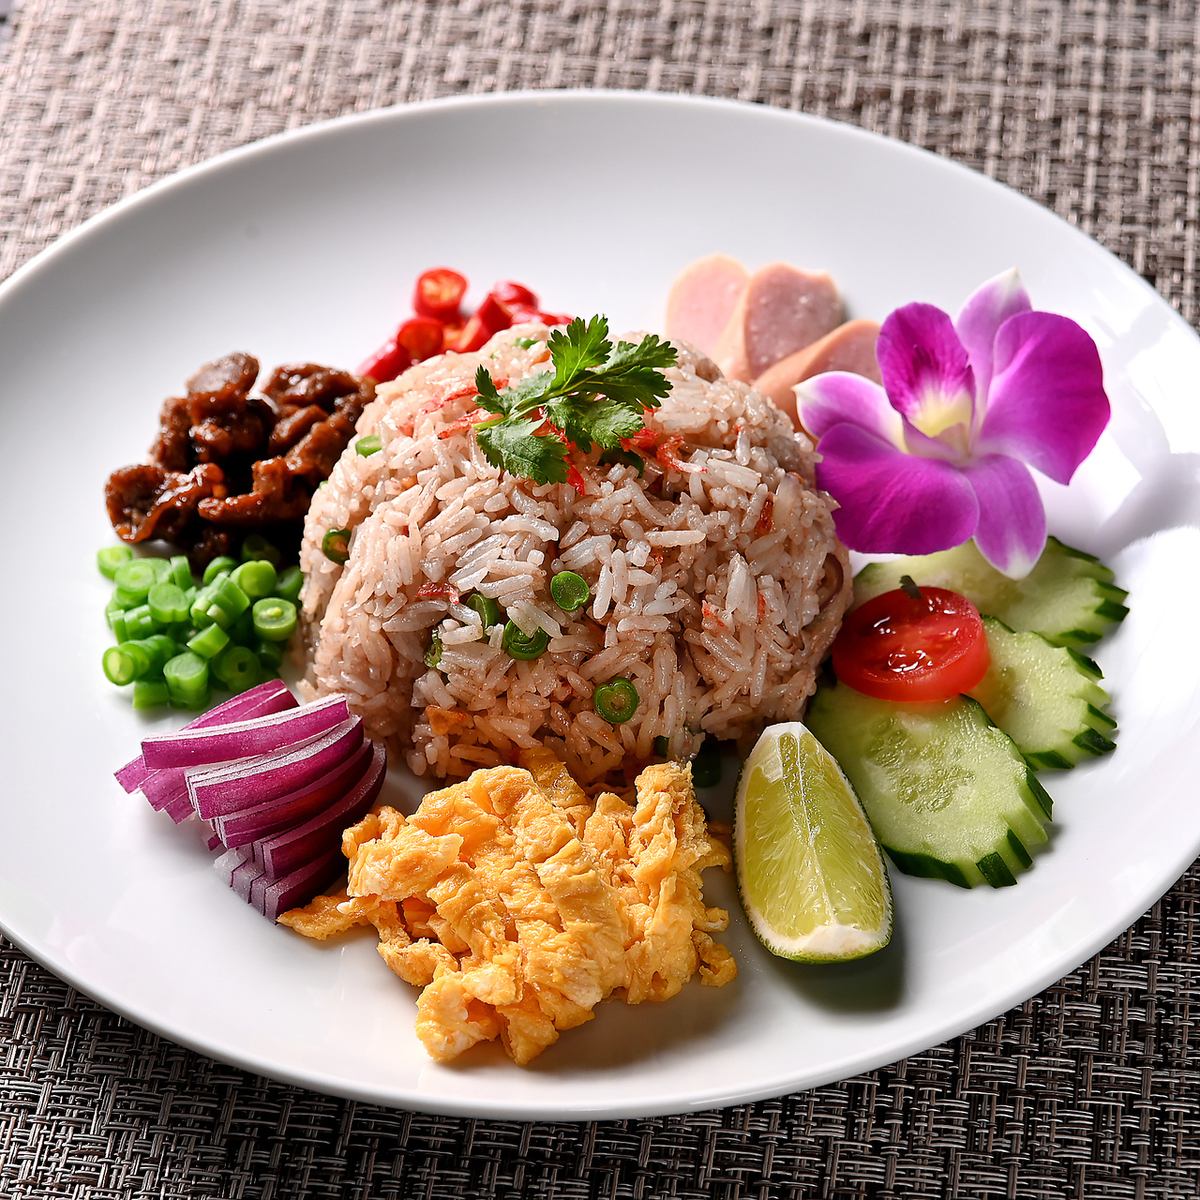 您可以在午餐时间享用正宗的泰国美食。